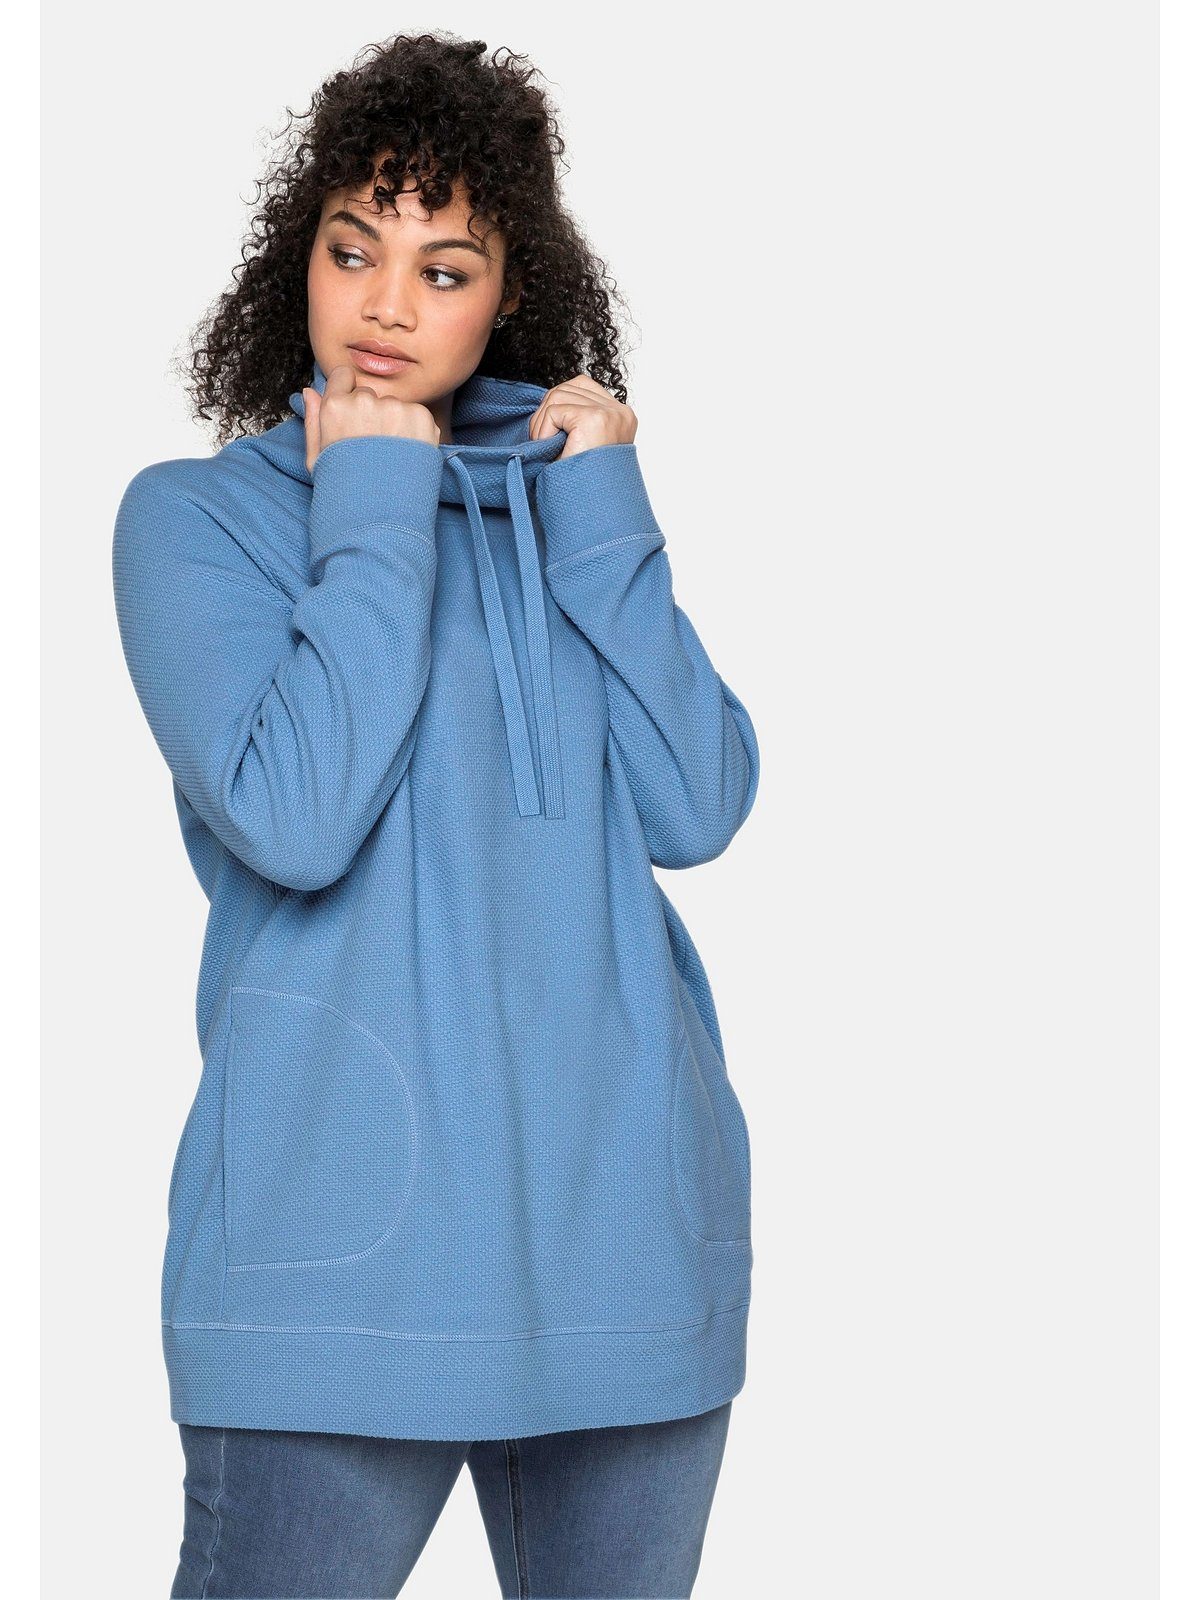 Sheego Sweatshirt Große Größen in Strukturqualität jeansblau | Sweatshirts